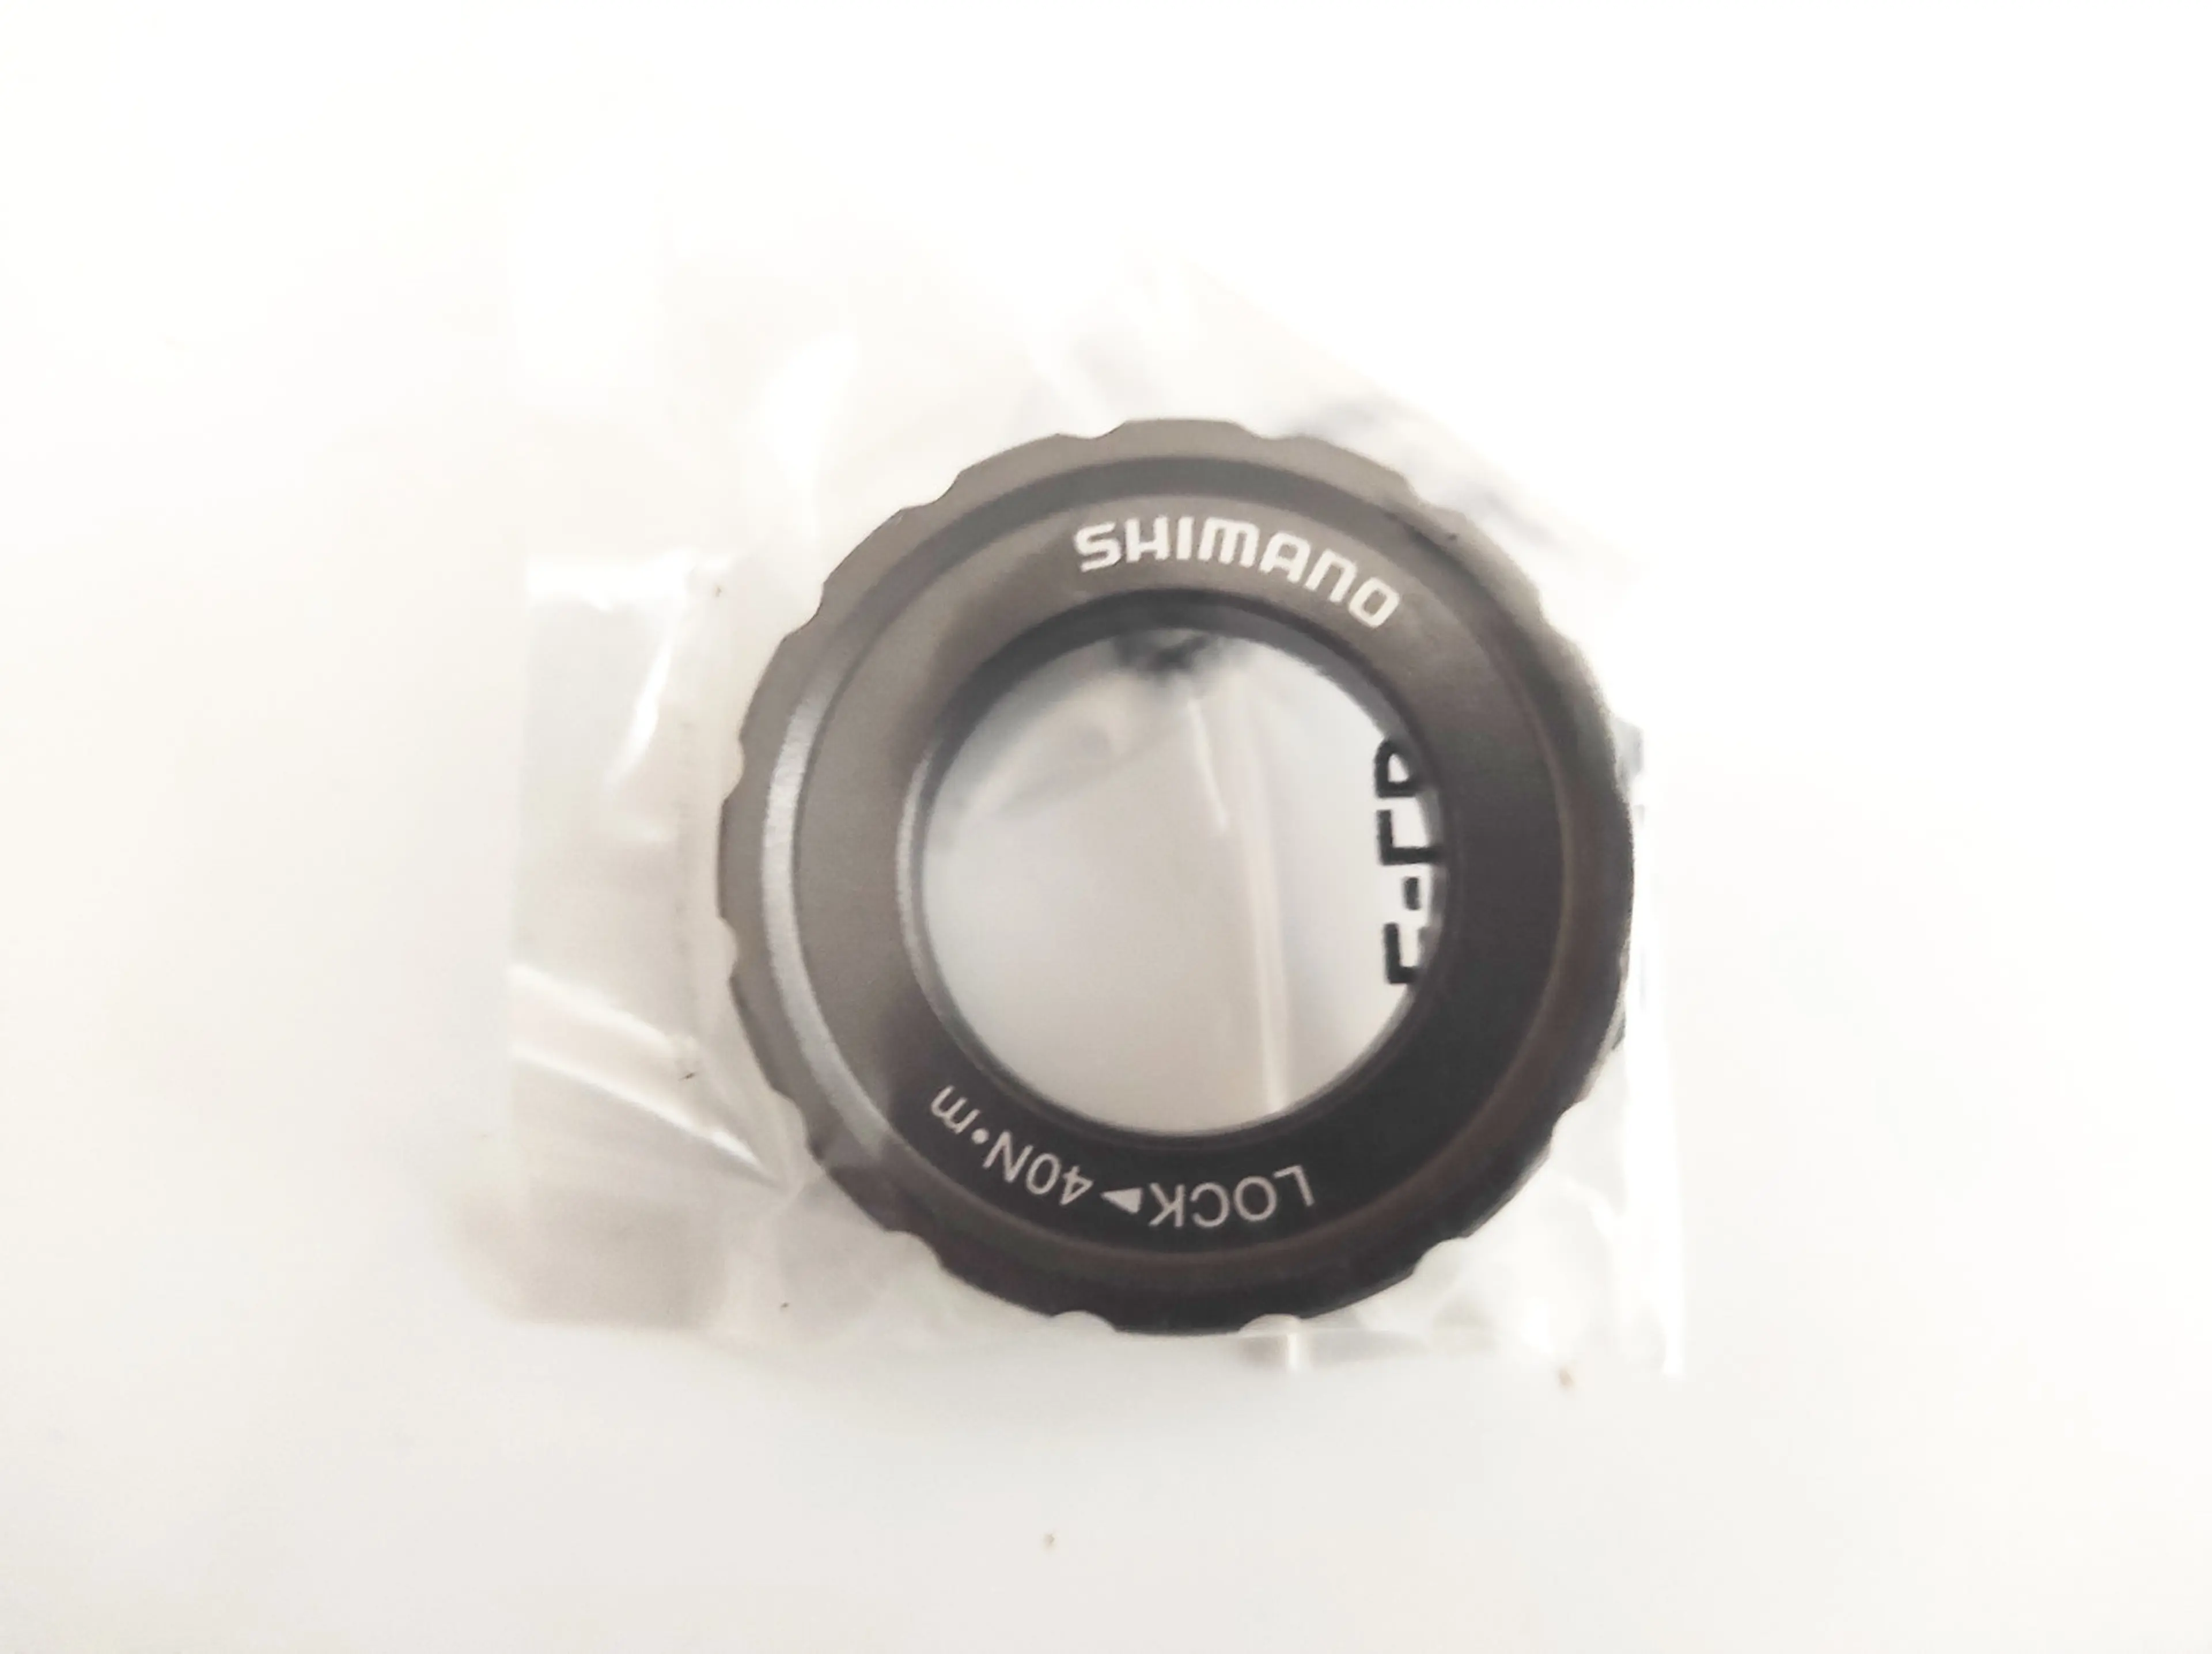 2. Butuc fata Shimano XTR HB-M9010 15x100mm, 28h, disc centerlock nou